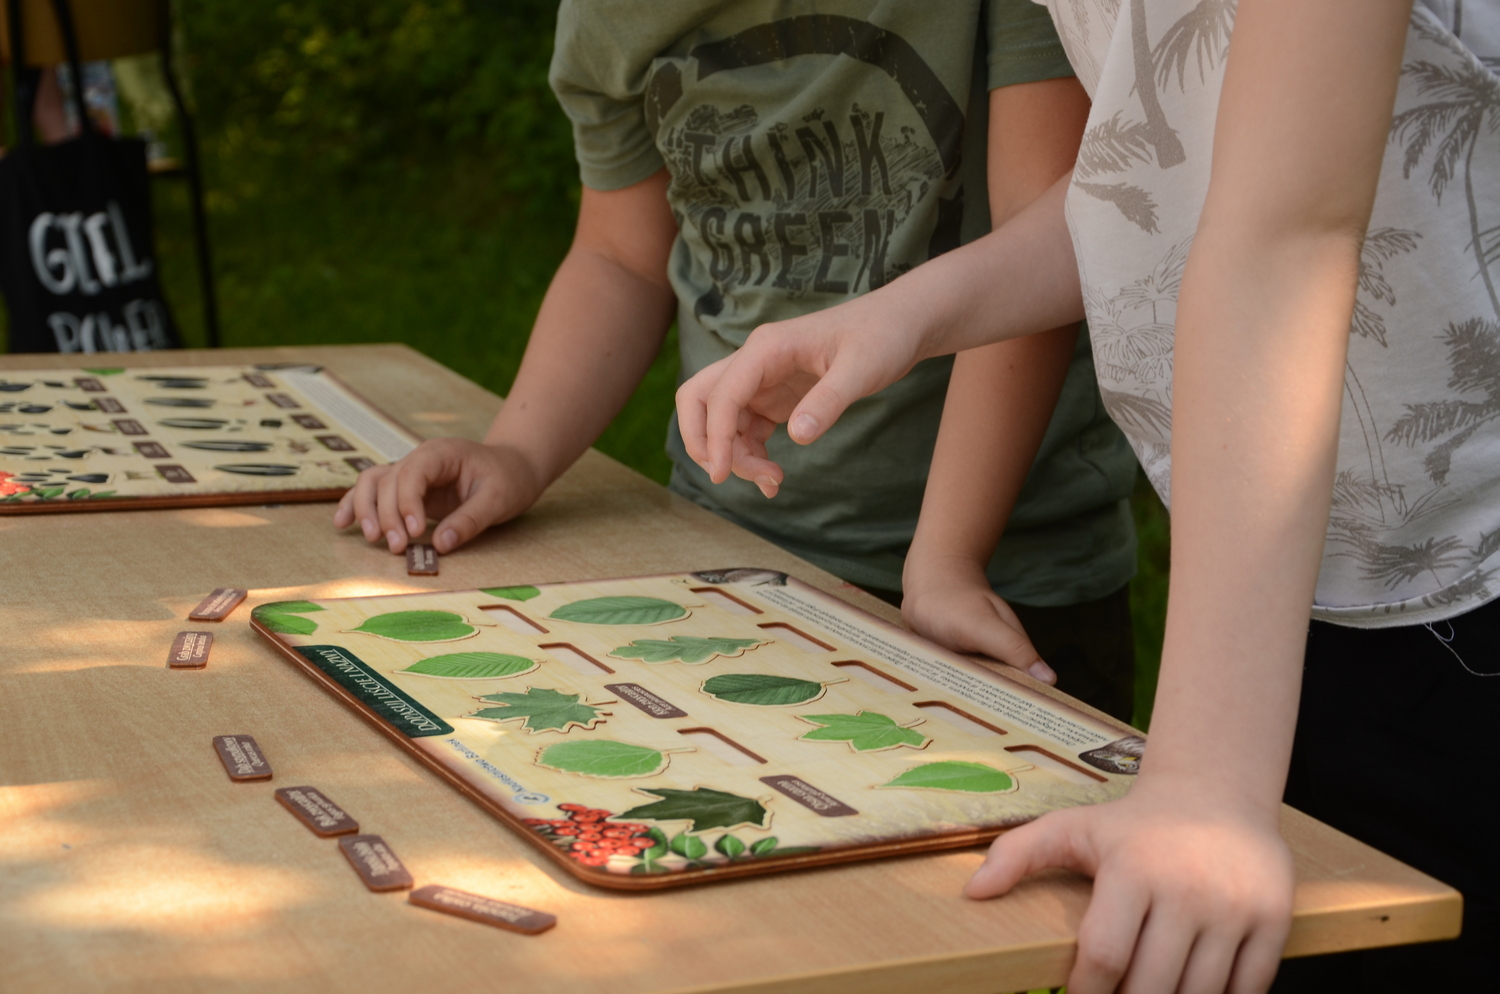 Na zdjęciu widać dłonie uczniów oraz puzzle o tematyce leśnej "Jaki to liść".